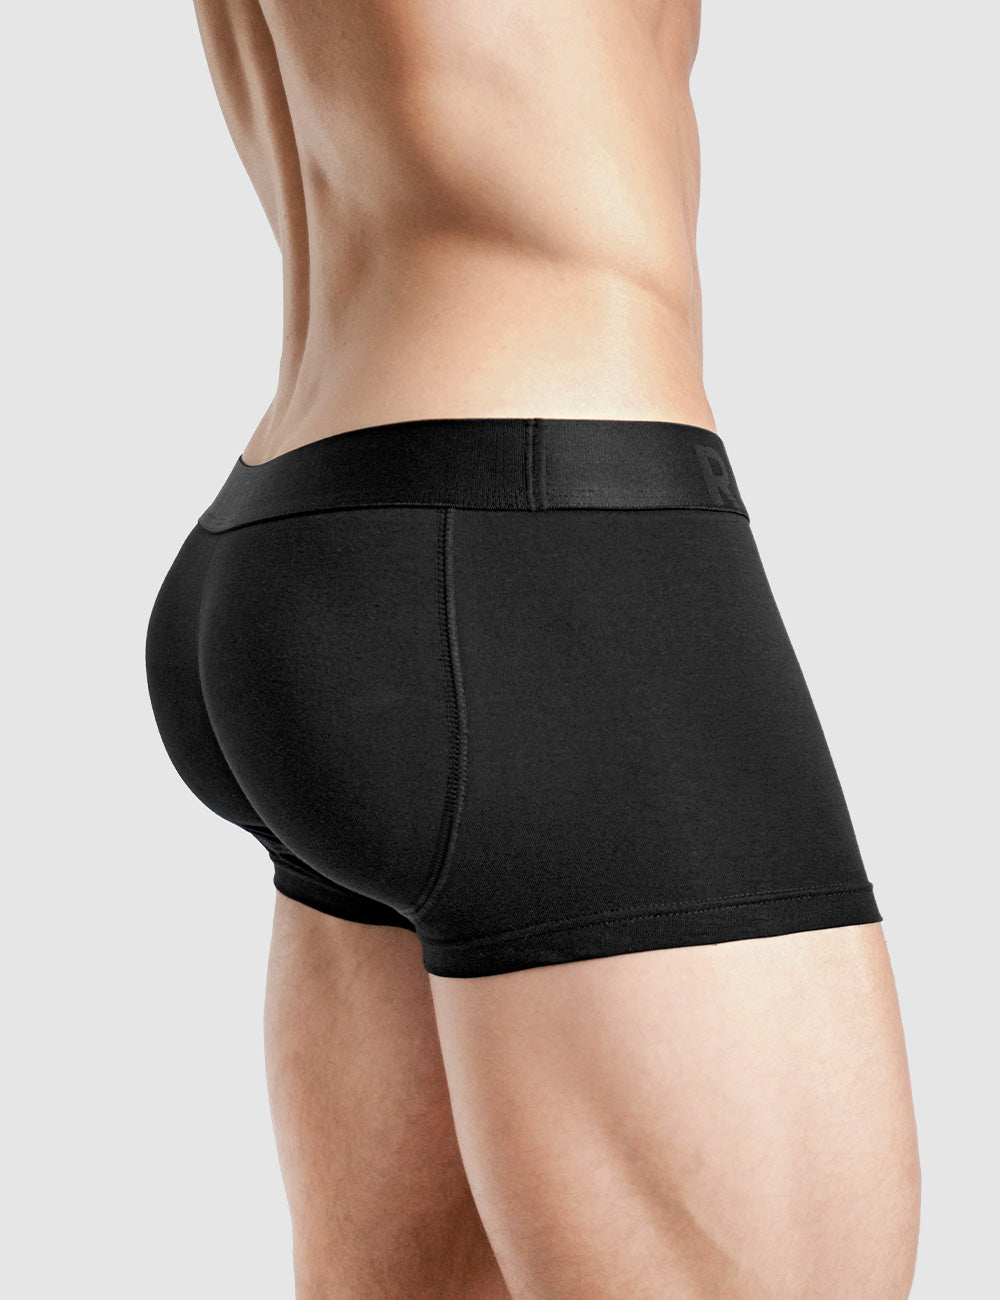 Black Butt Padded Underwear Men - Rounderbum Boxer Trunks